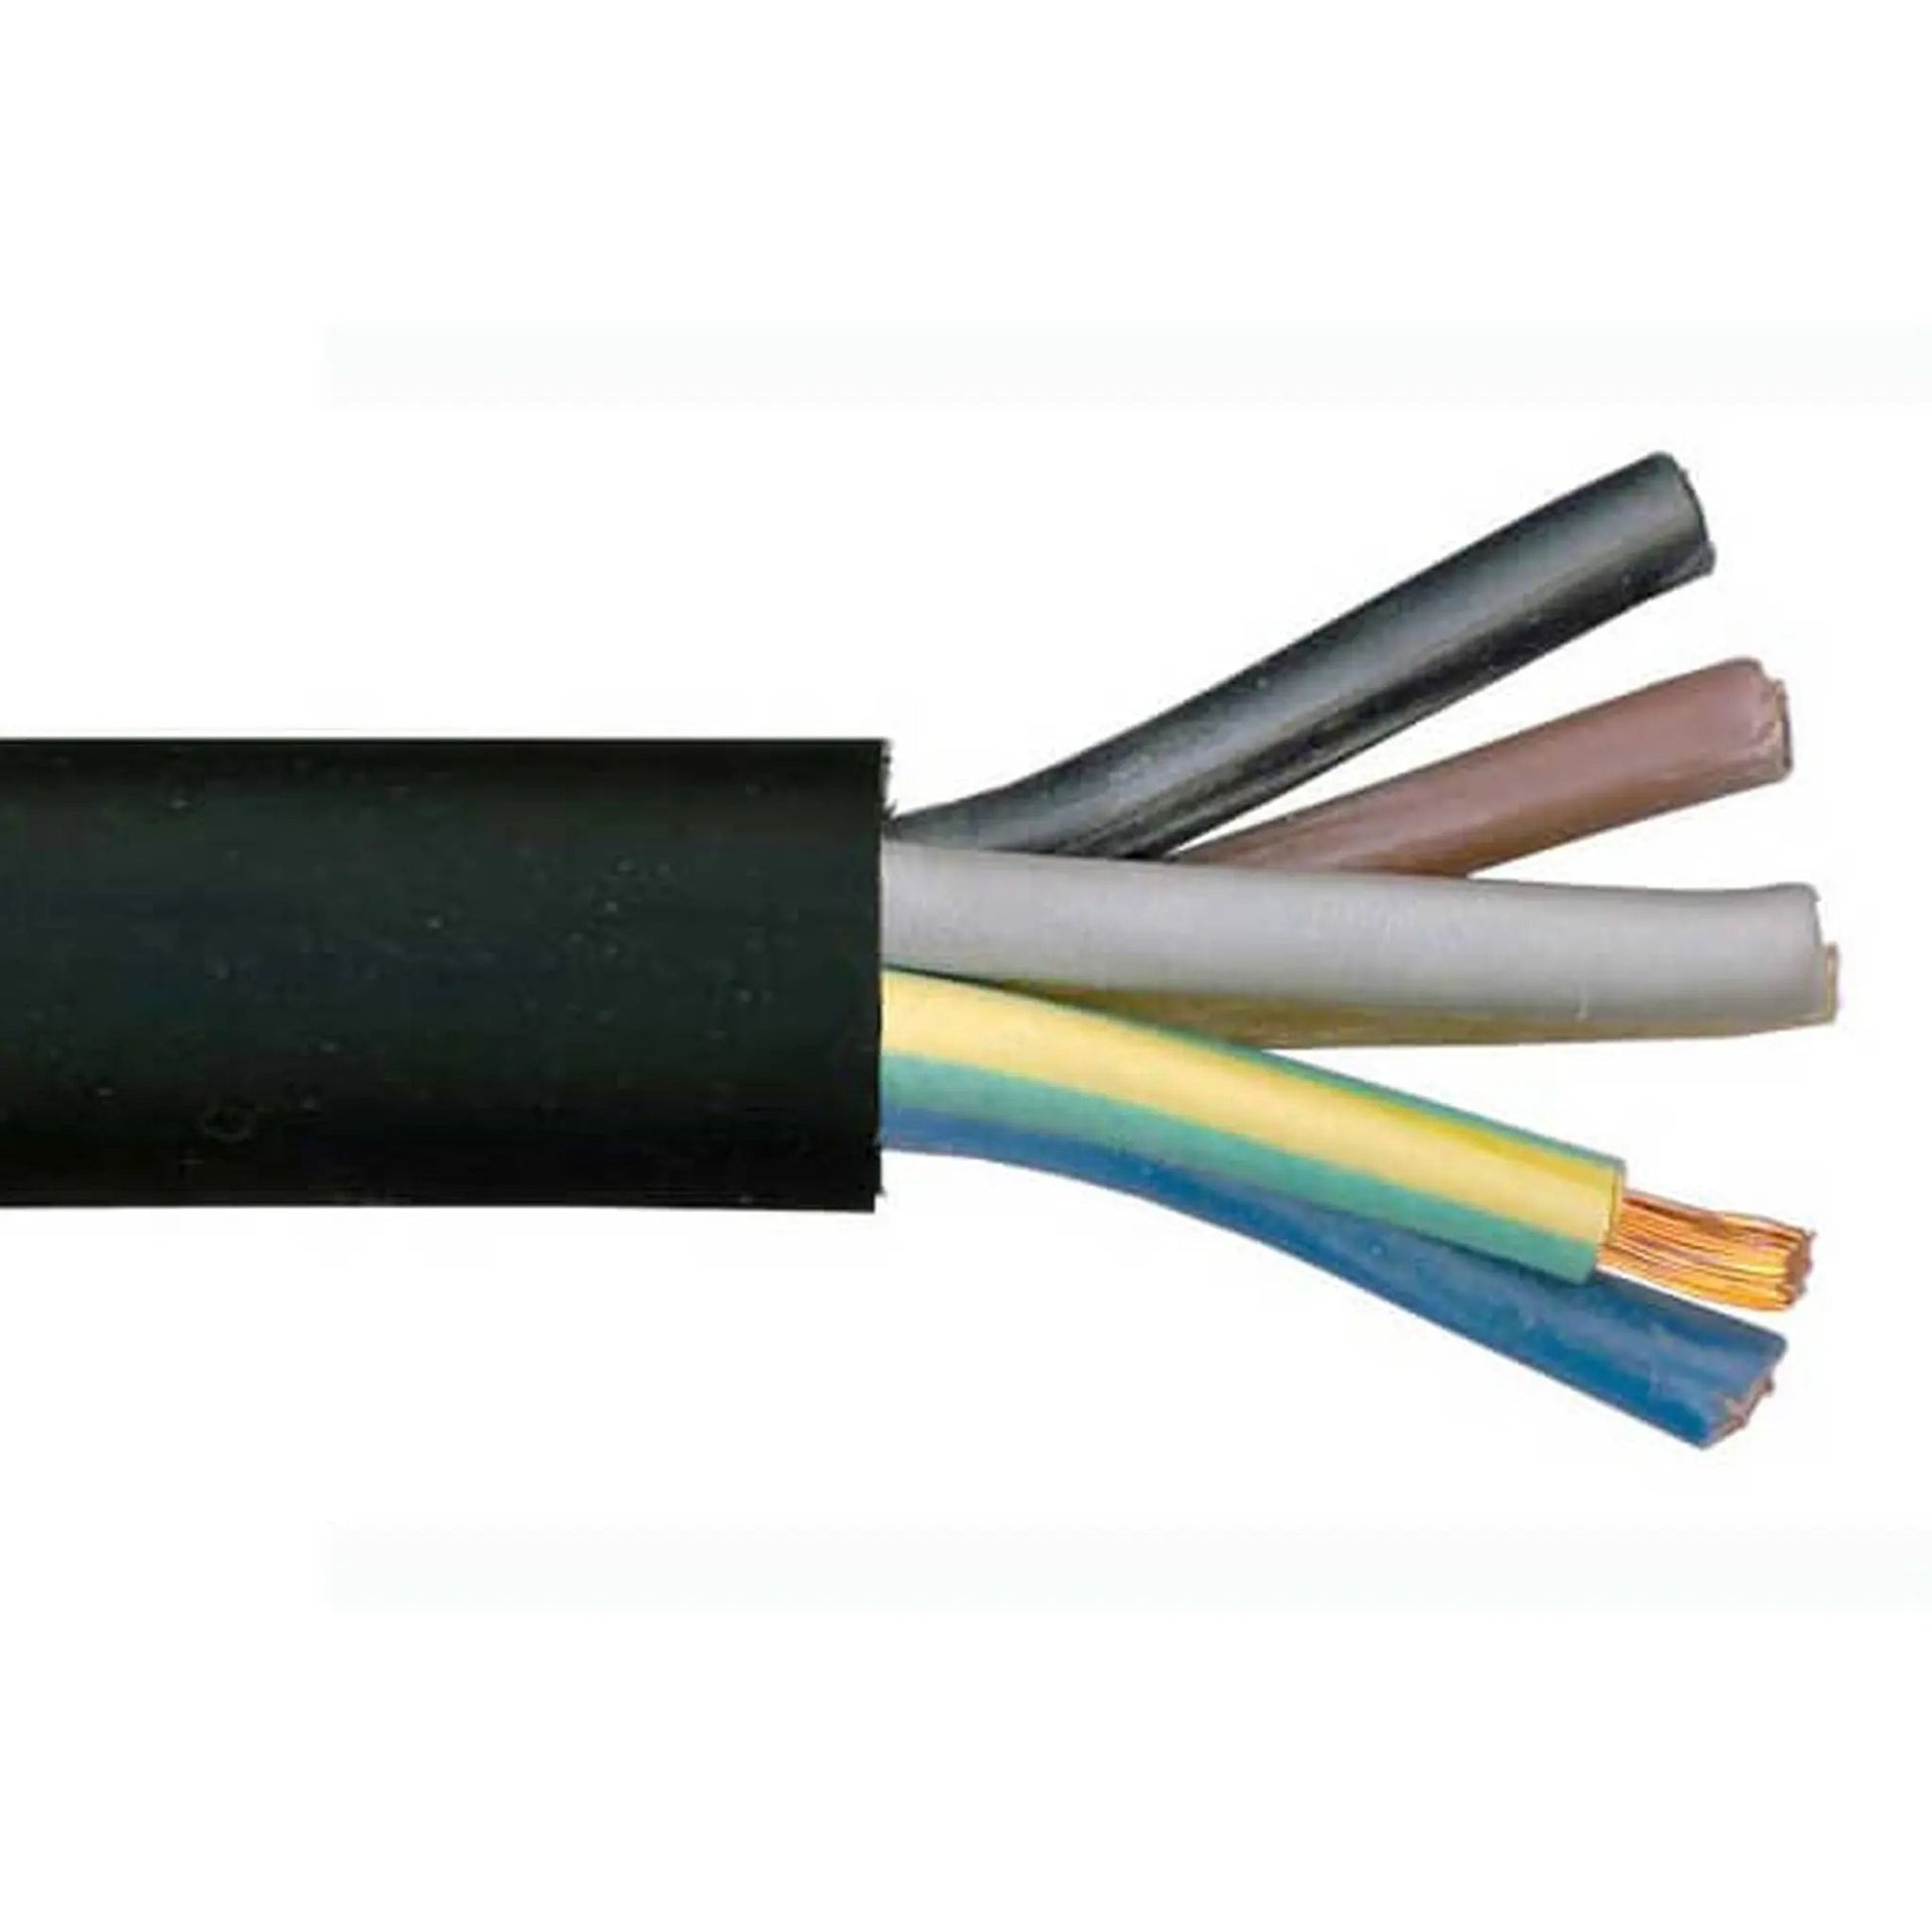 H07RN-F 7 Core Rubber Cable - Black Cut to Size Per Metre Cable | Finnmark Sauna